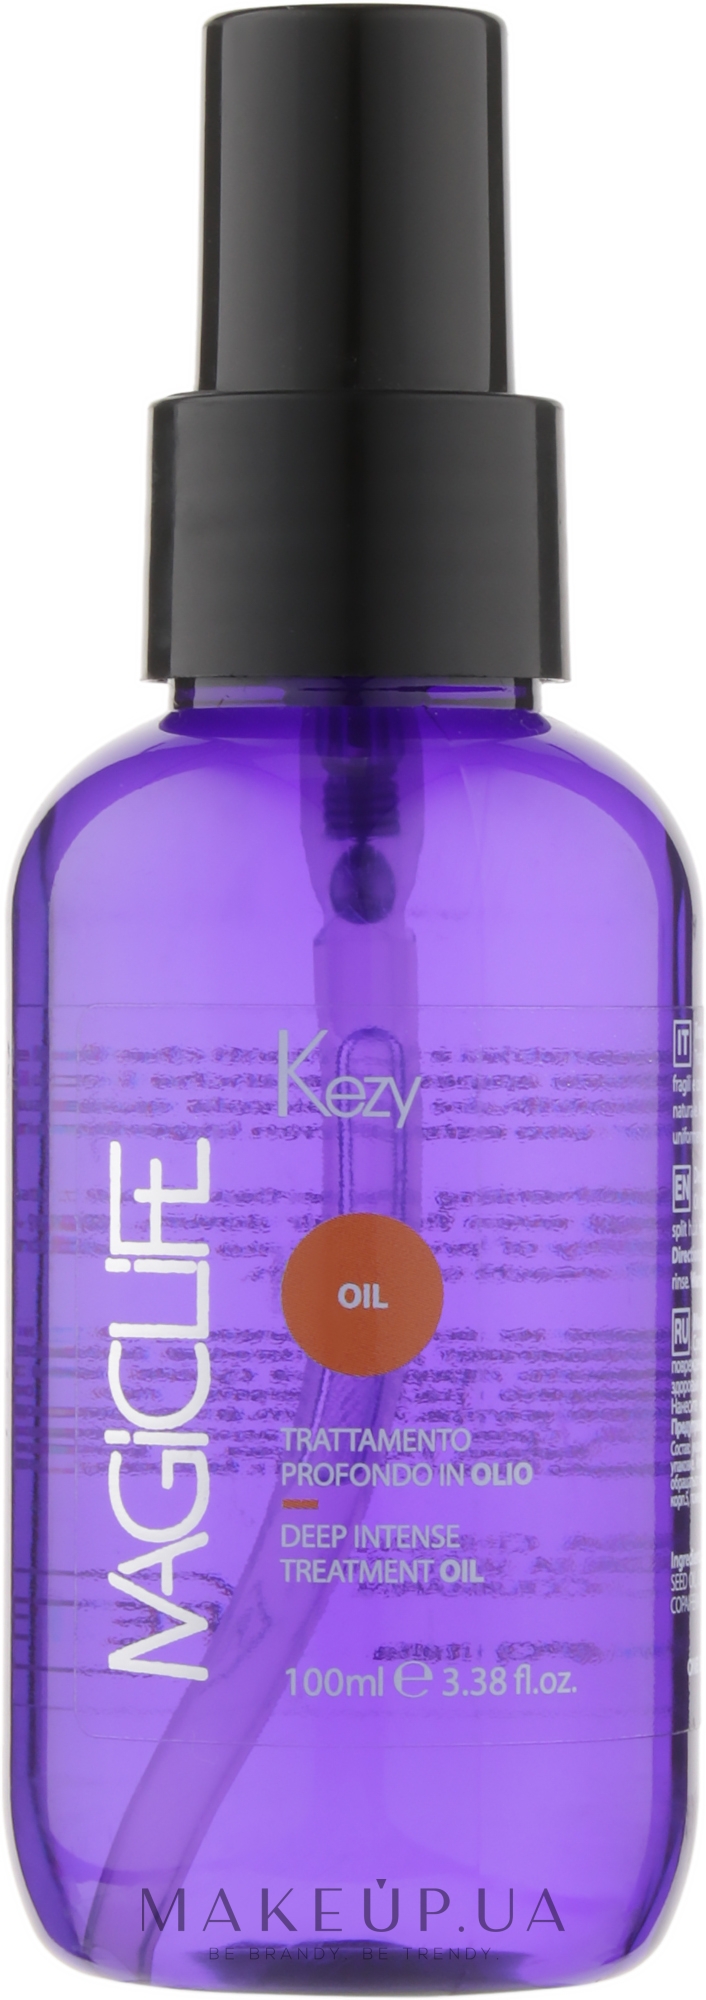 Масло для волос, для глубокого ухода - Kezy Magic Life Deep Intense Treatment Oil — фото 100ml